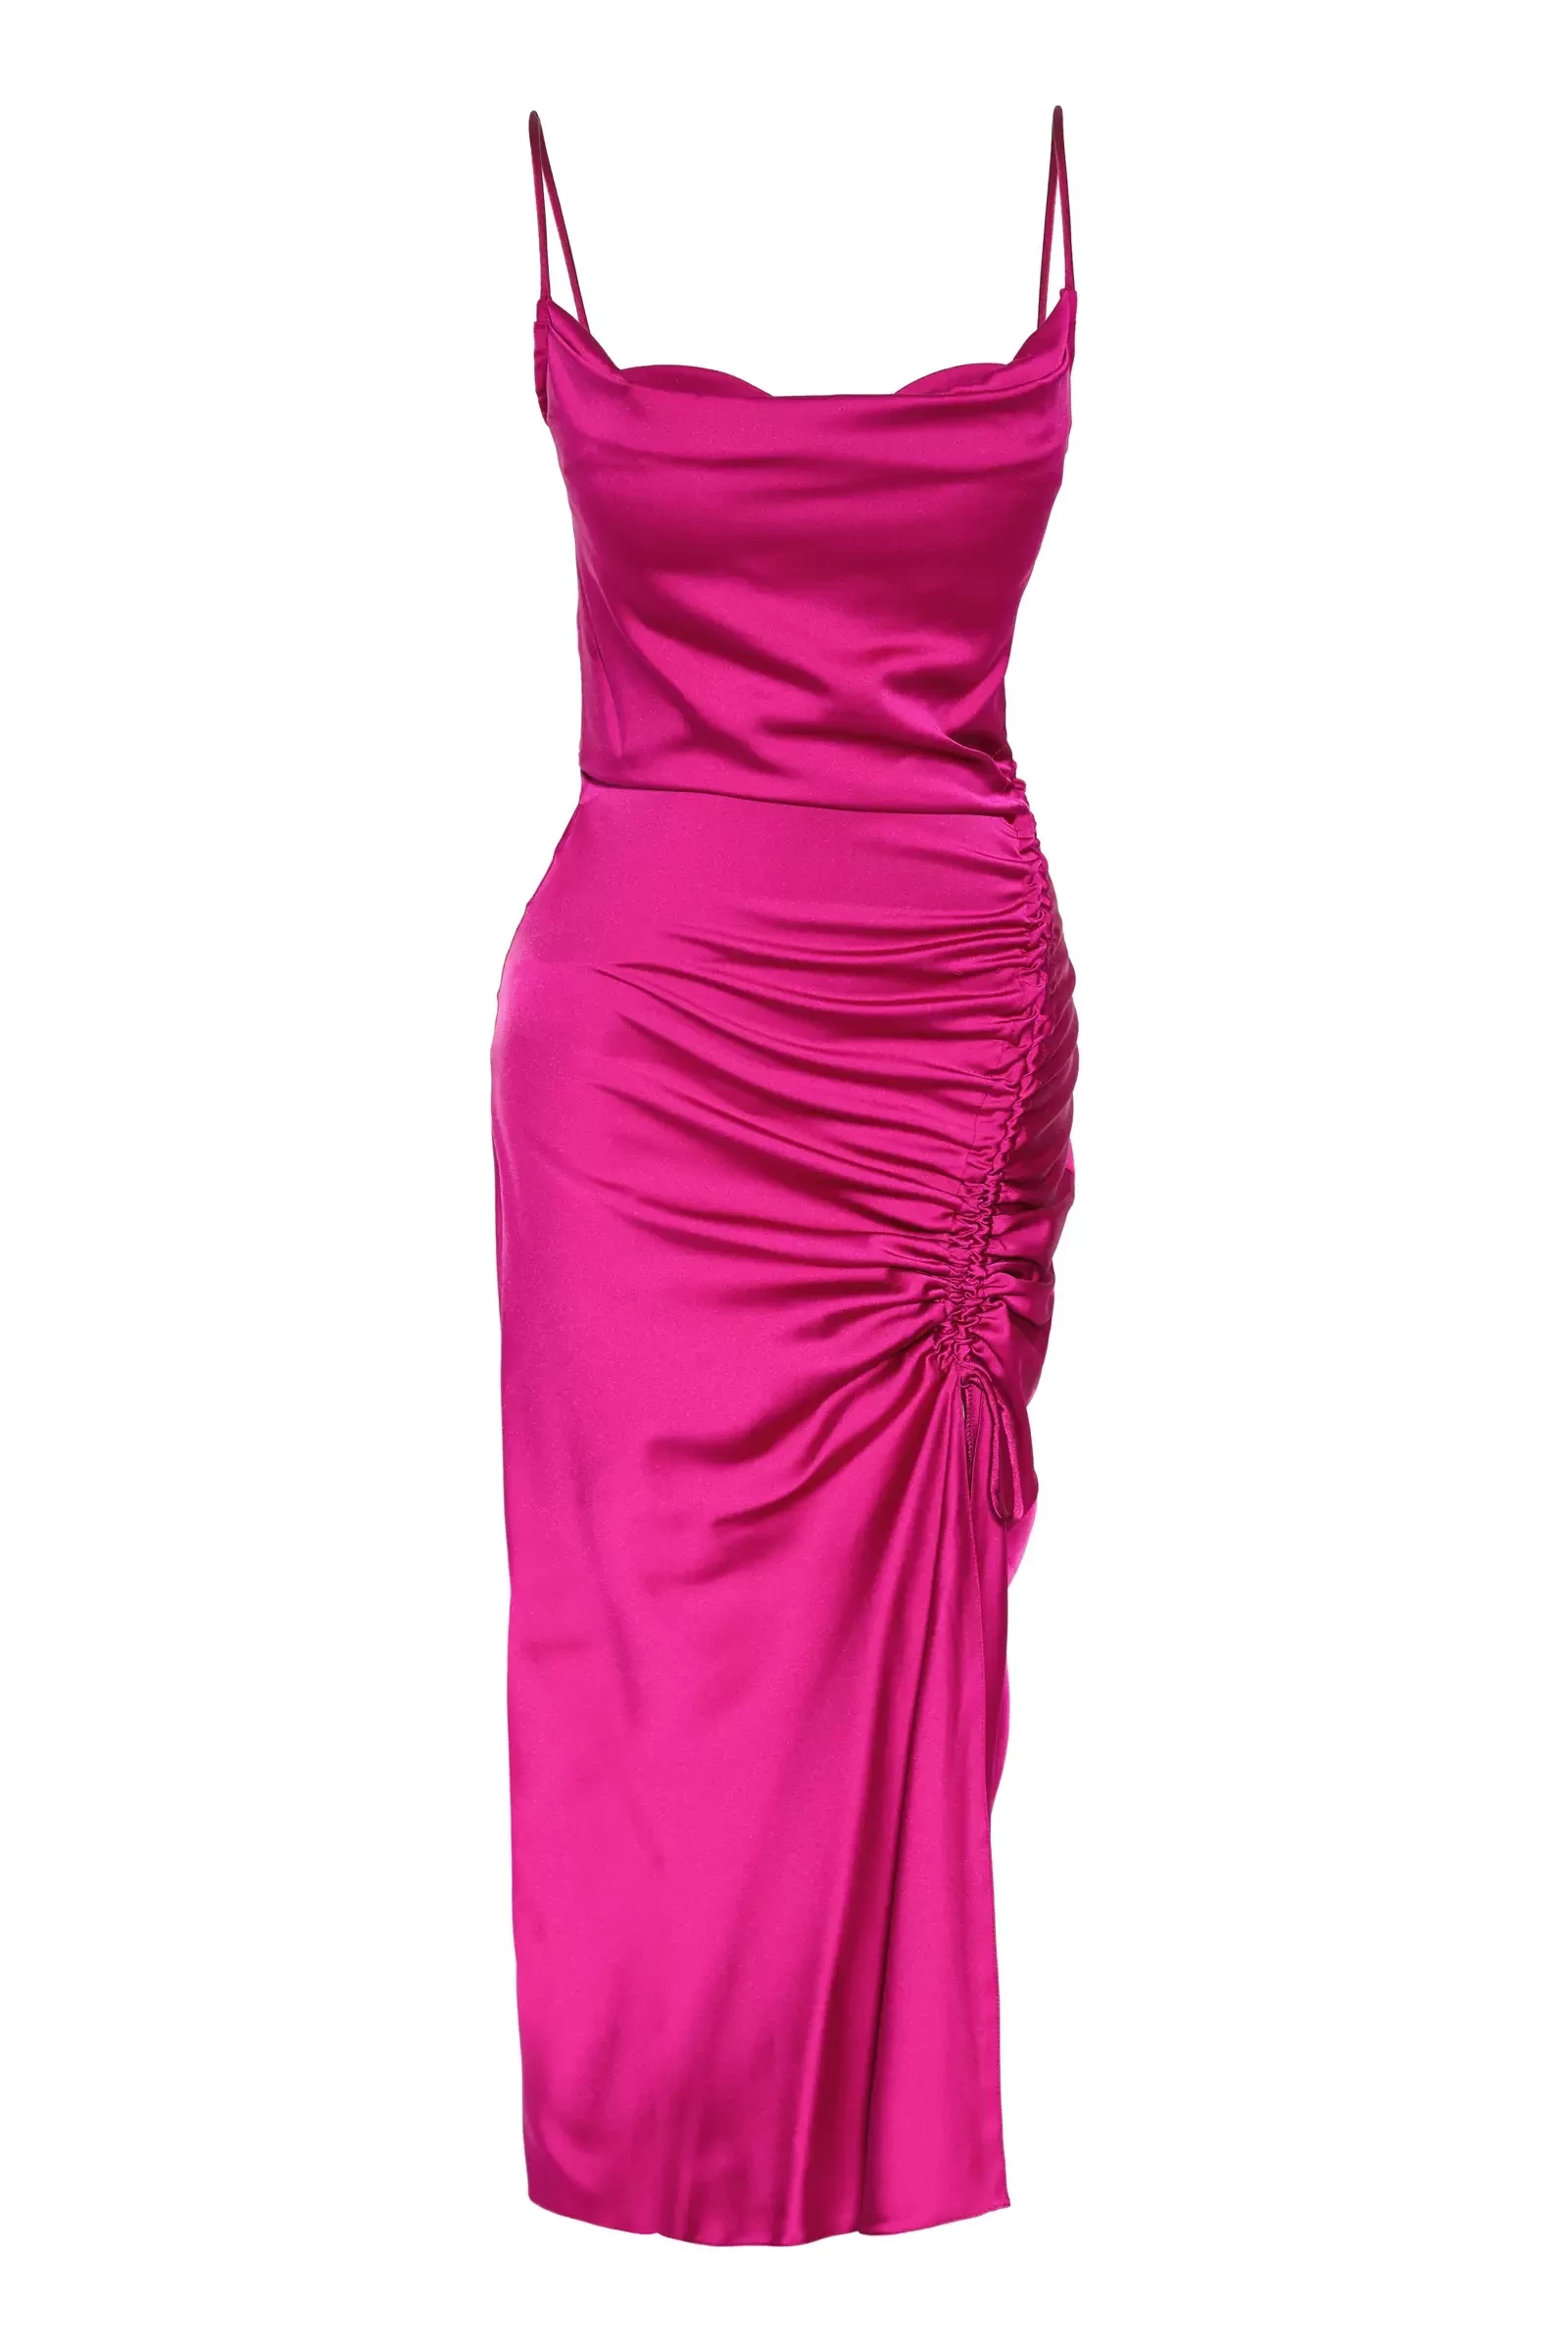 Fuchsia Satin Sleeveless Maxi Dress-965160-025 | Fuchsia Dresses | KeiKei